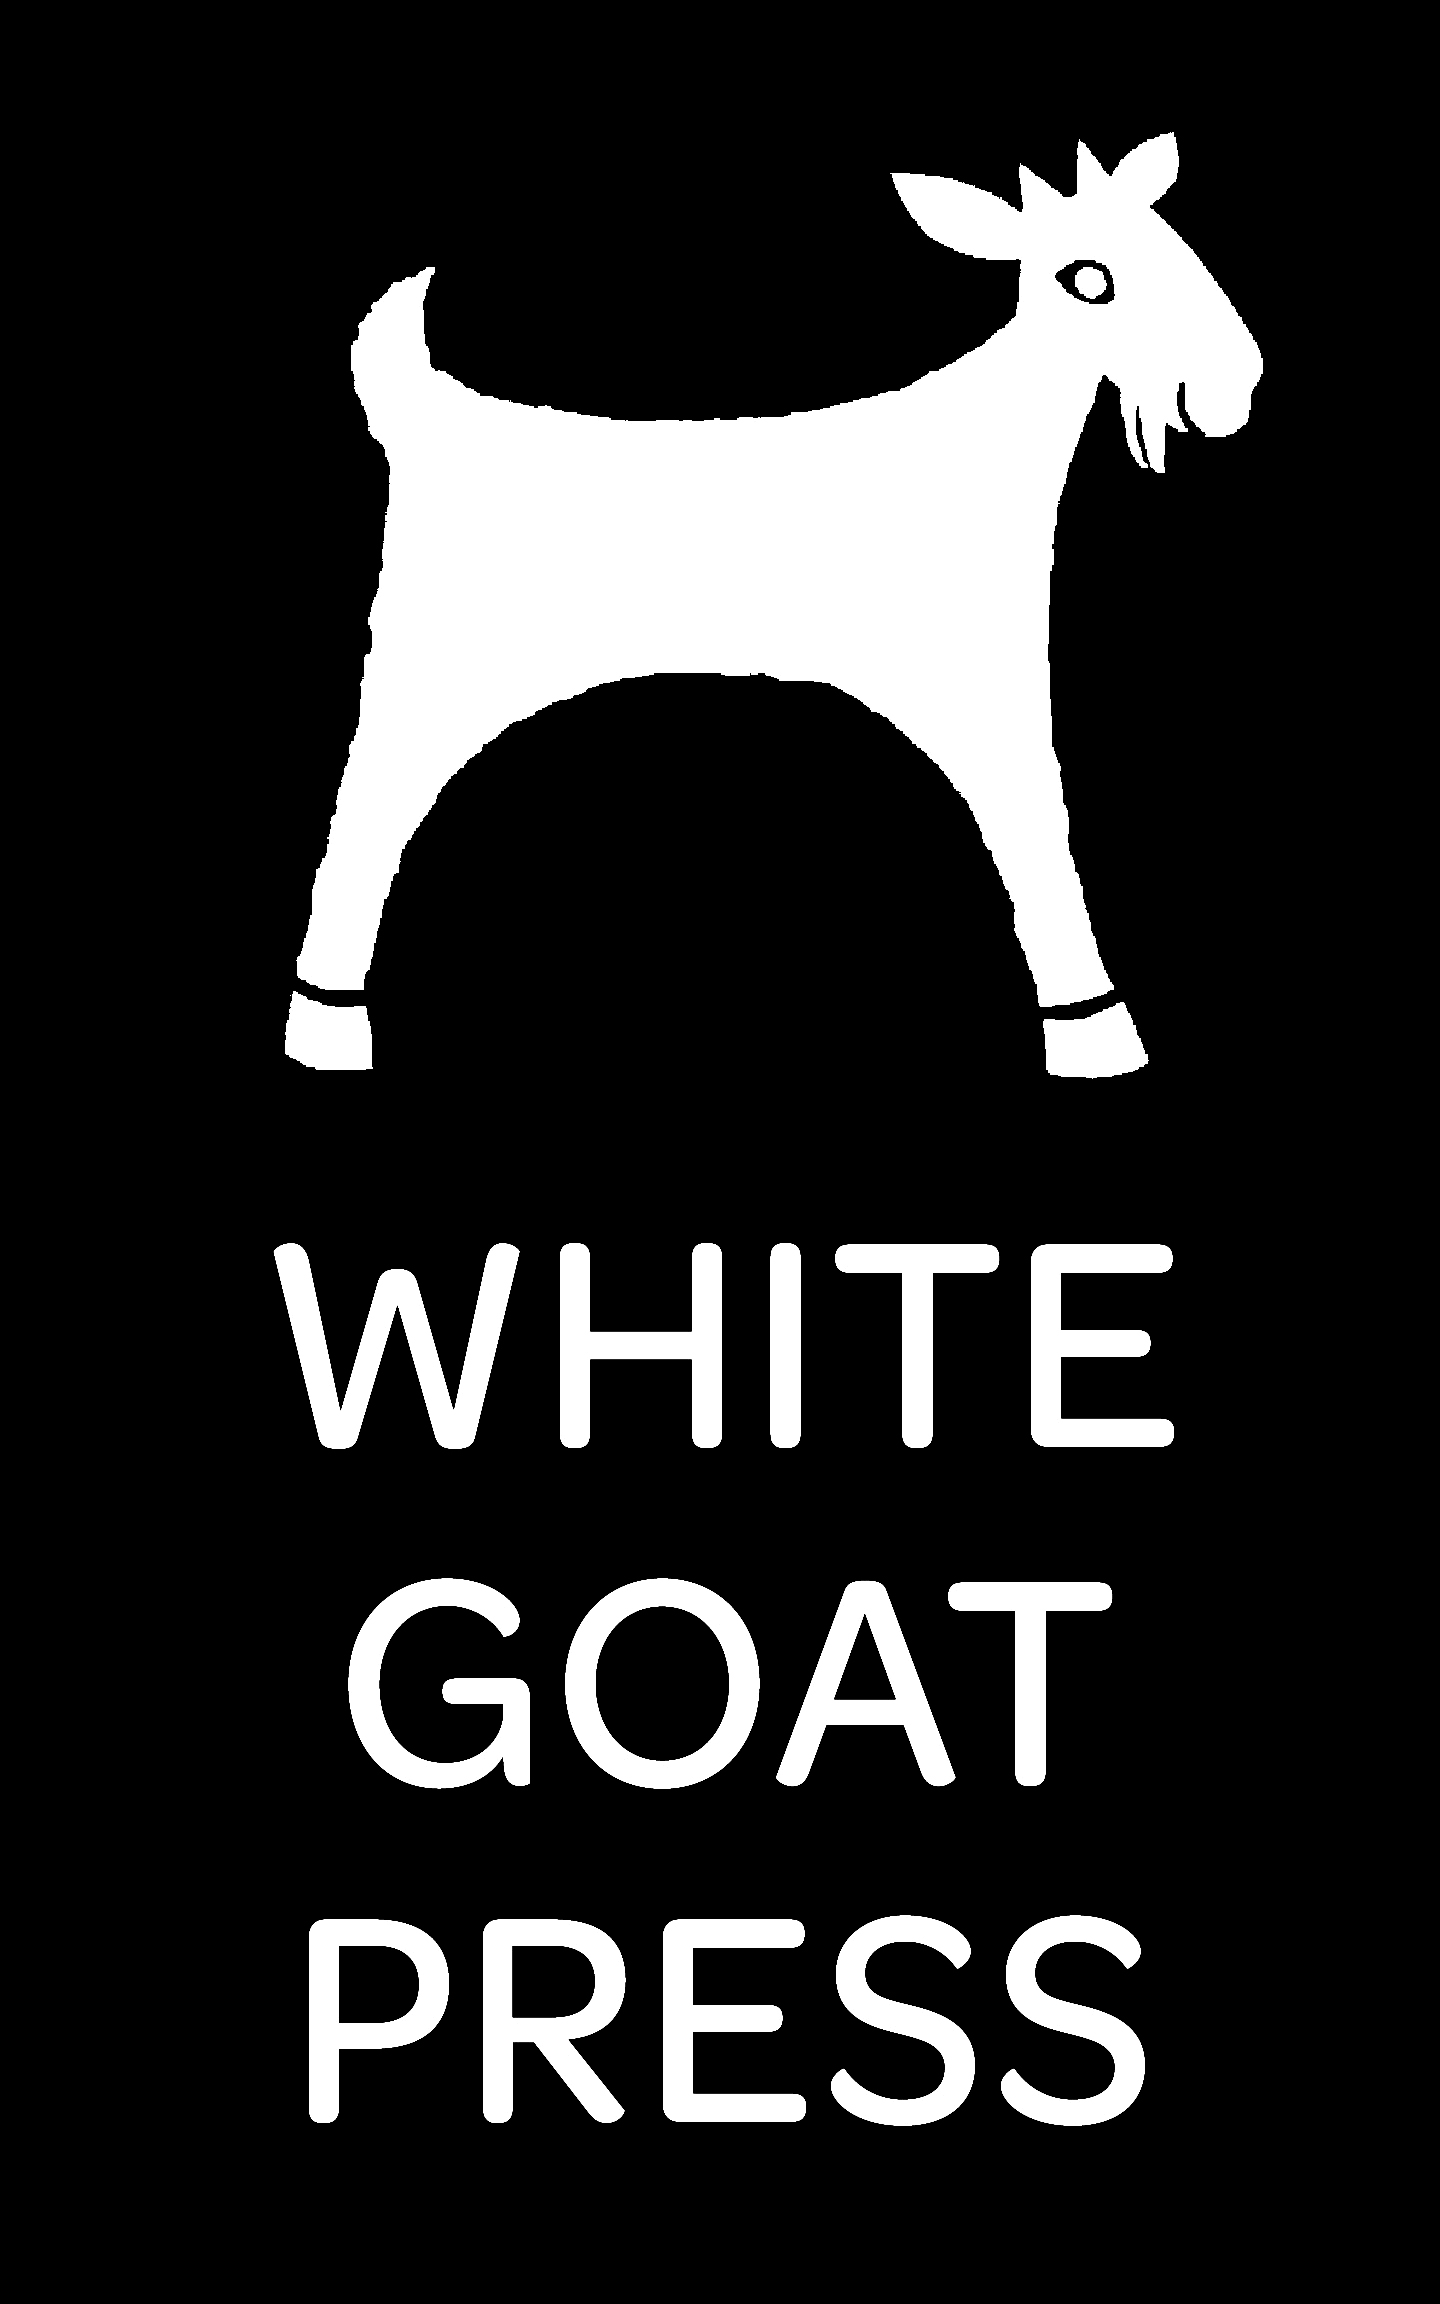 White Goat Press